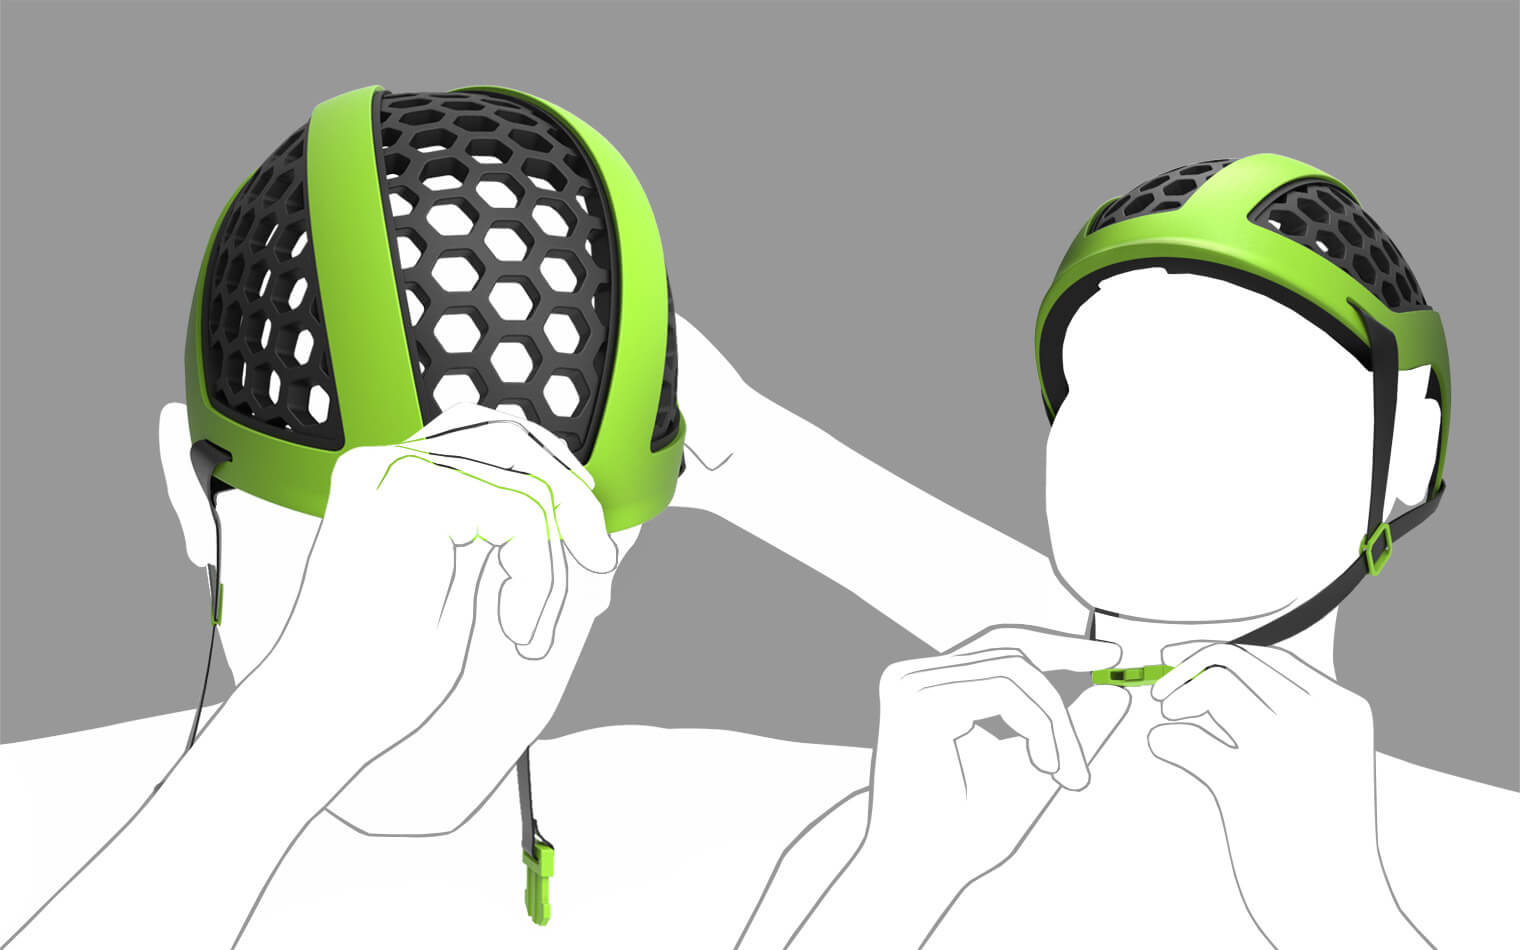 Dieses Bild zeigt unterschiedliche Phasen des Aufziehens des Helmes.